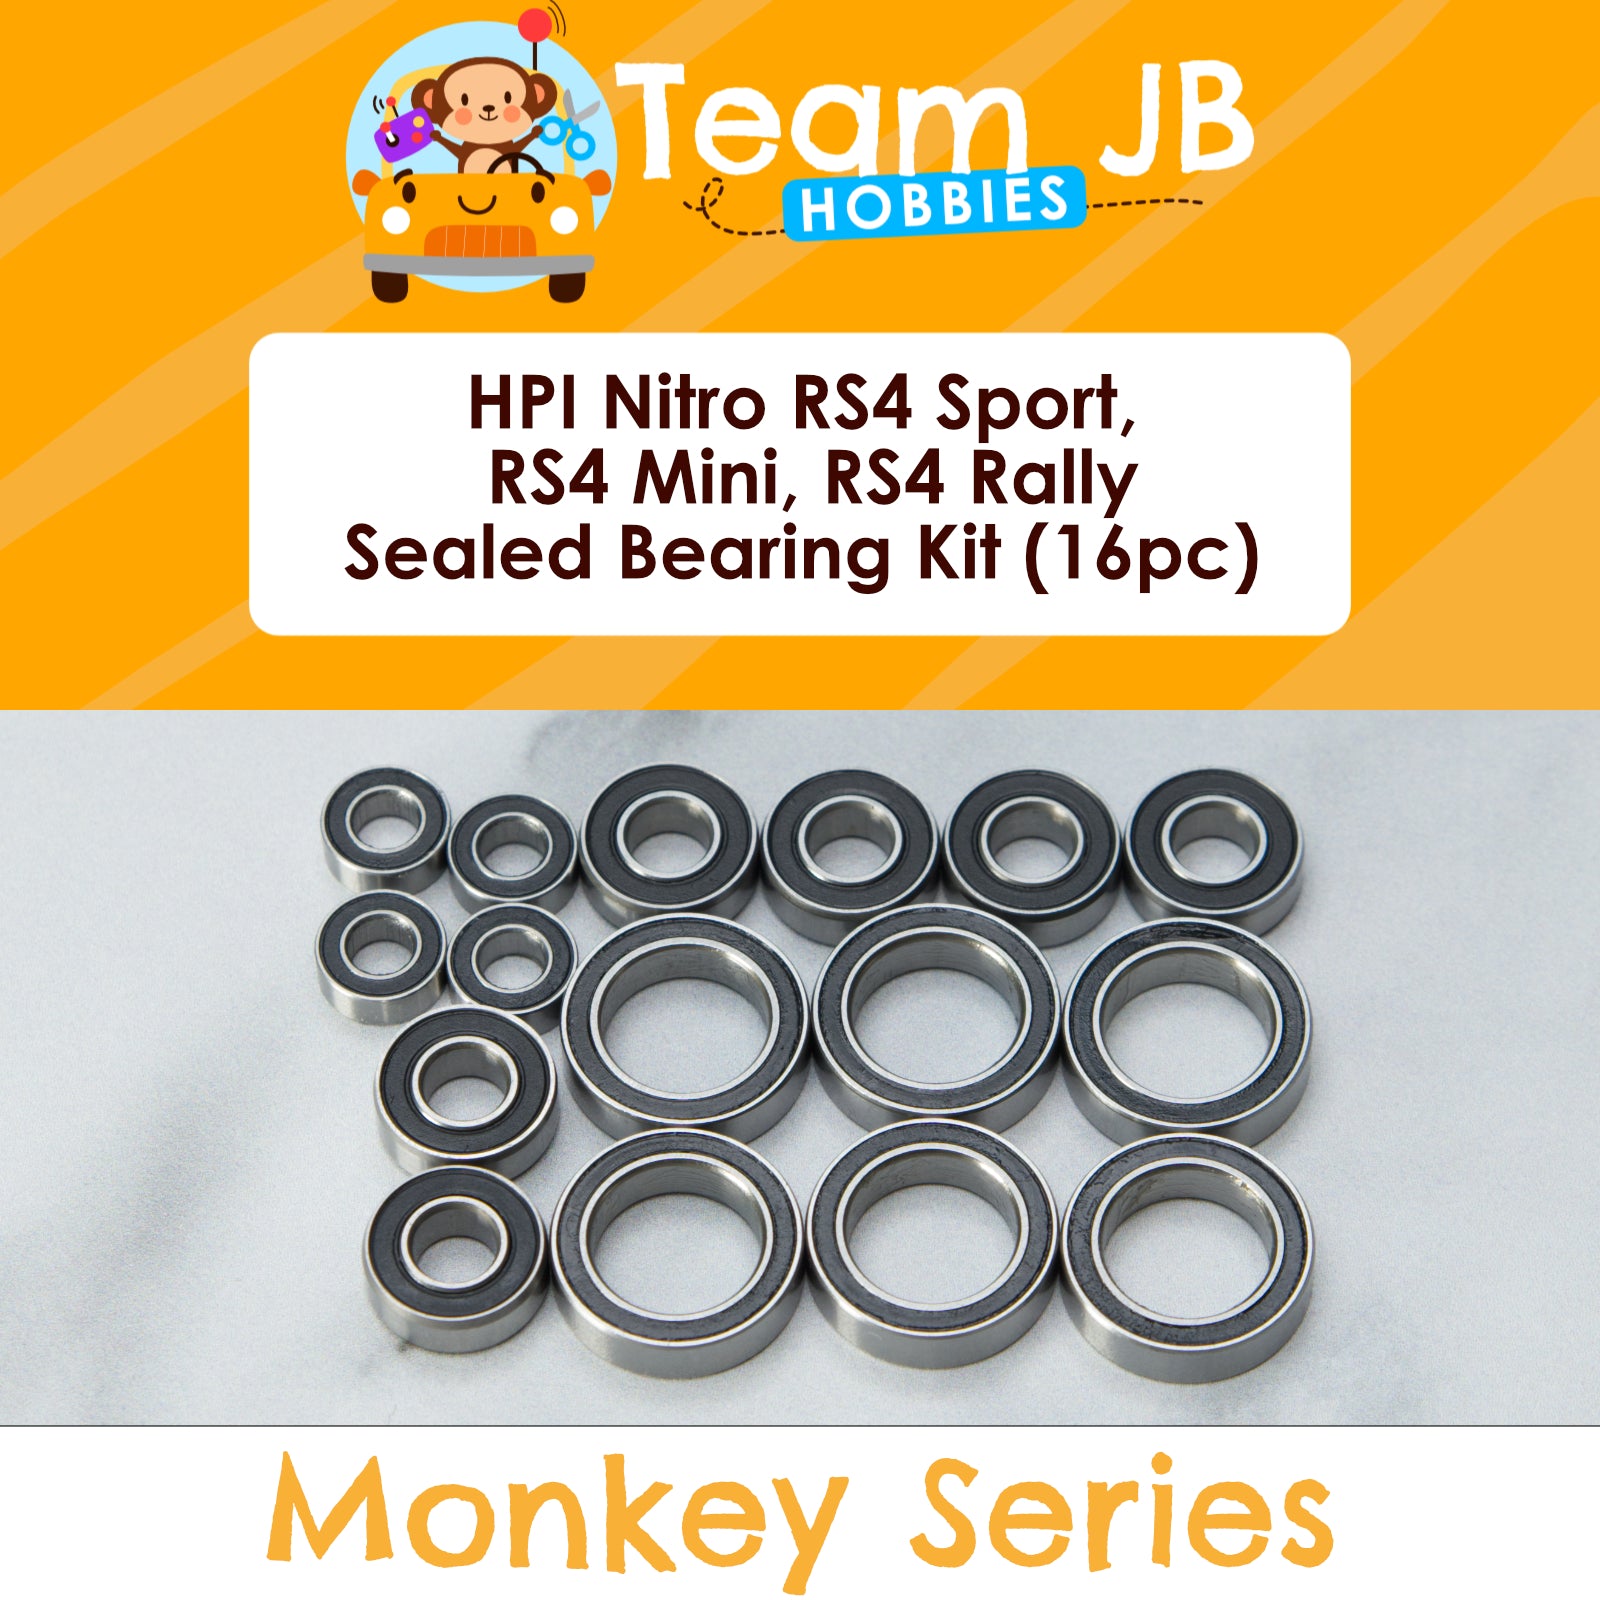 HPI Nitro RS4 Sport, RS4 Mini, RS4 Rally - Sealed Bearing Kit